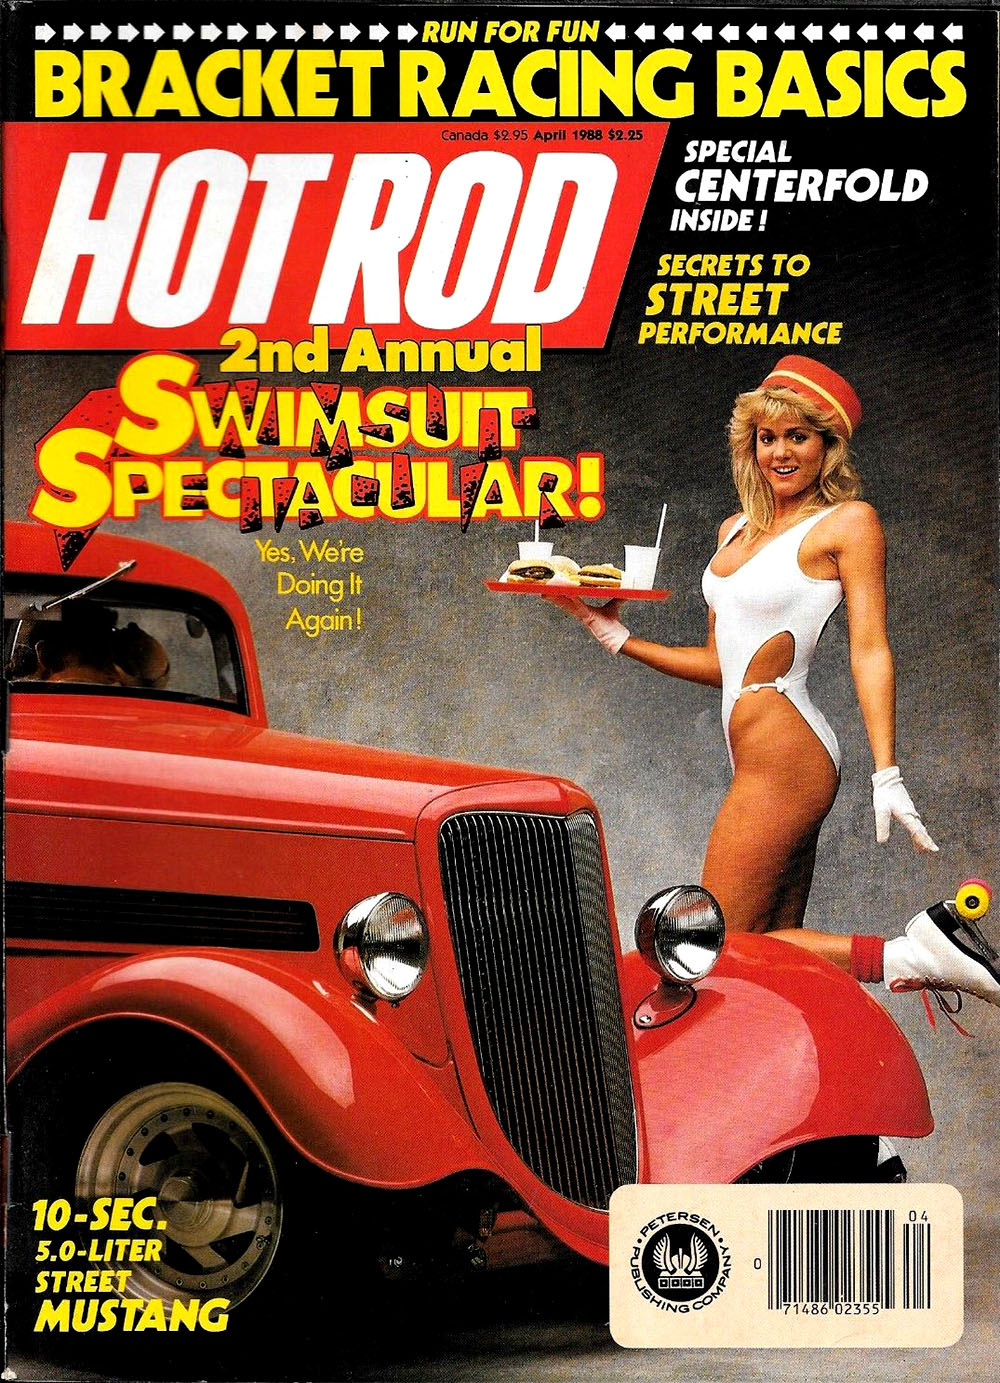 1988 roller skating girl magazine cover